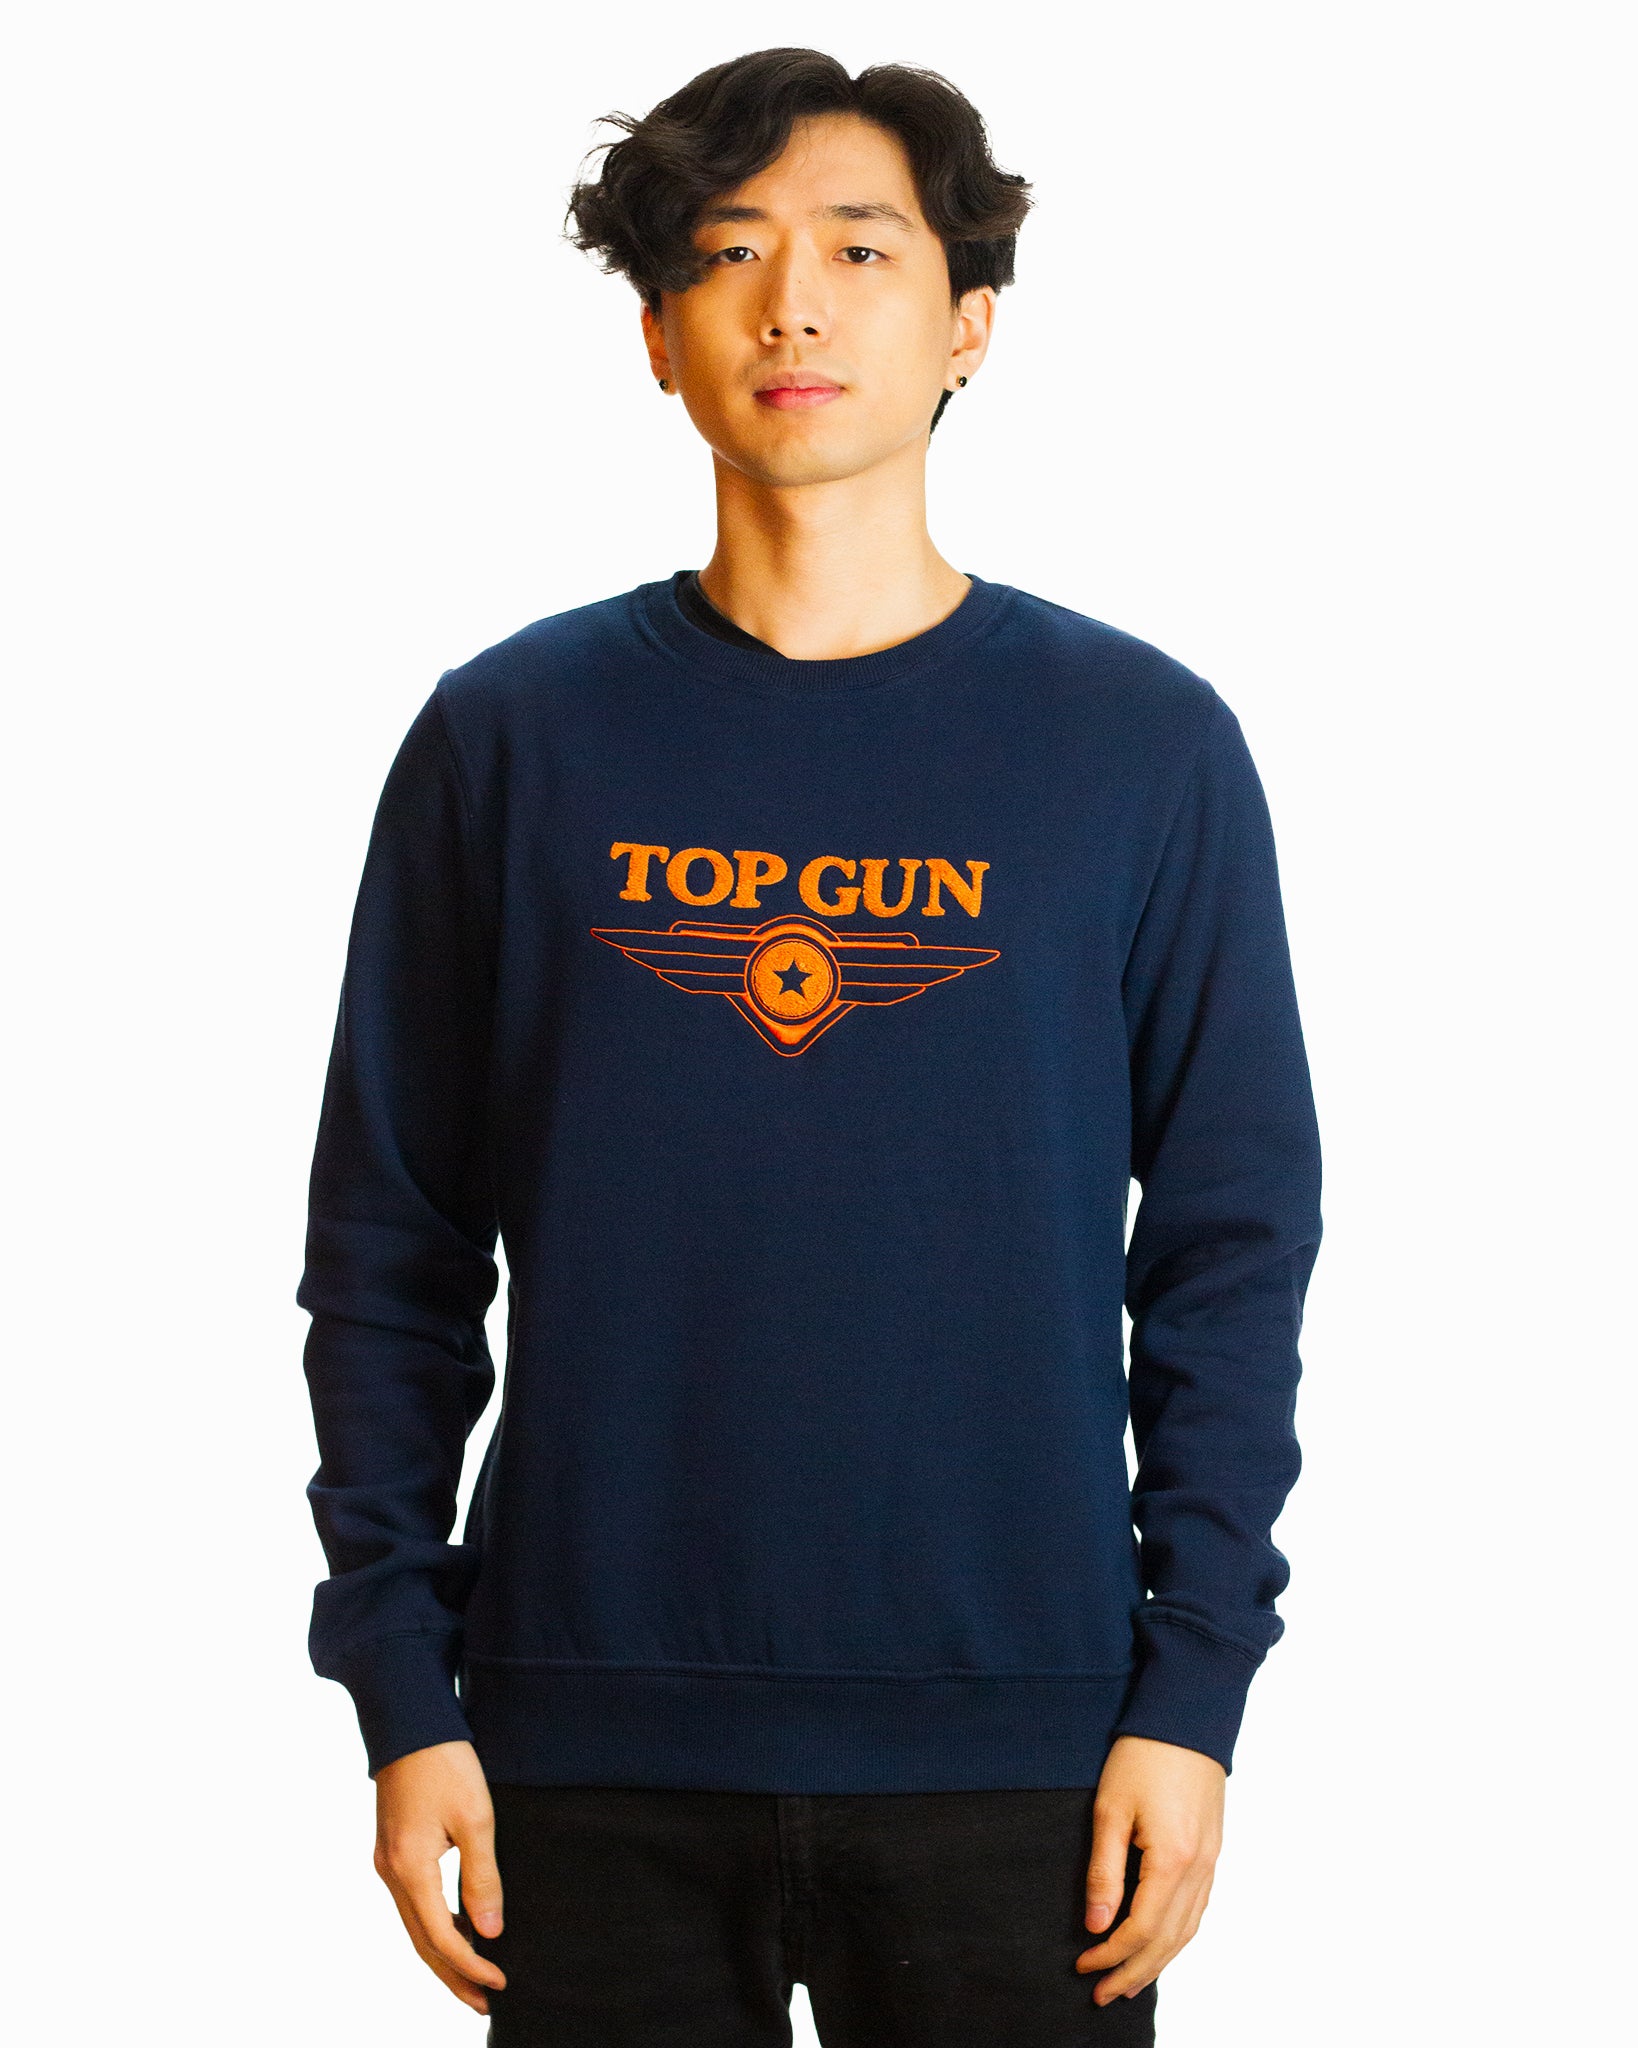 Men\'s Hoodies & Sweatshirts | The Top Gun® Official Store – Top Gun Store